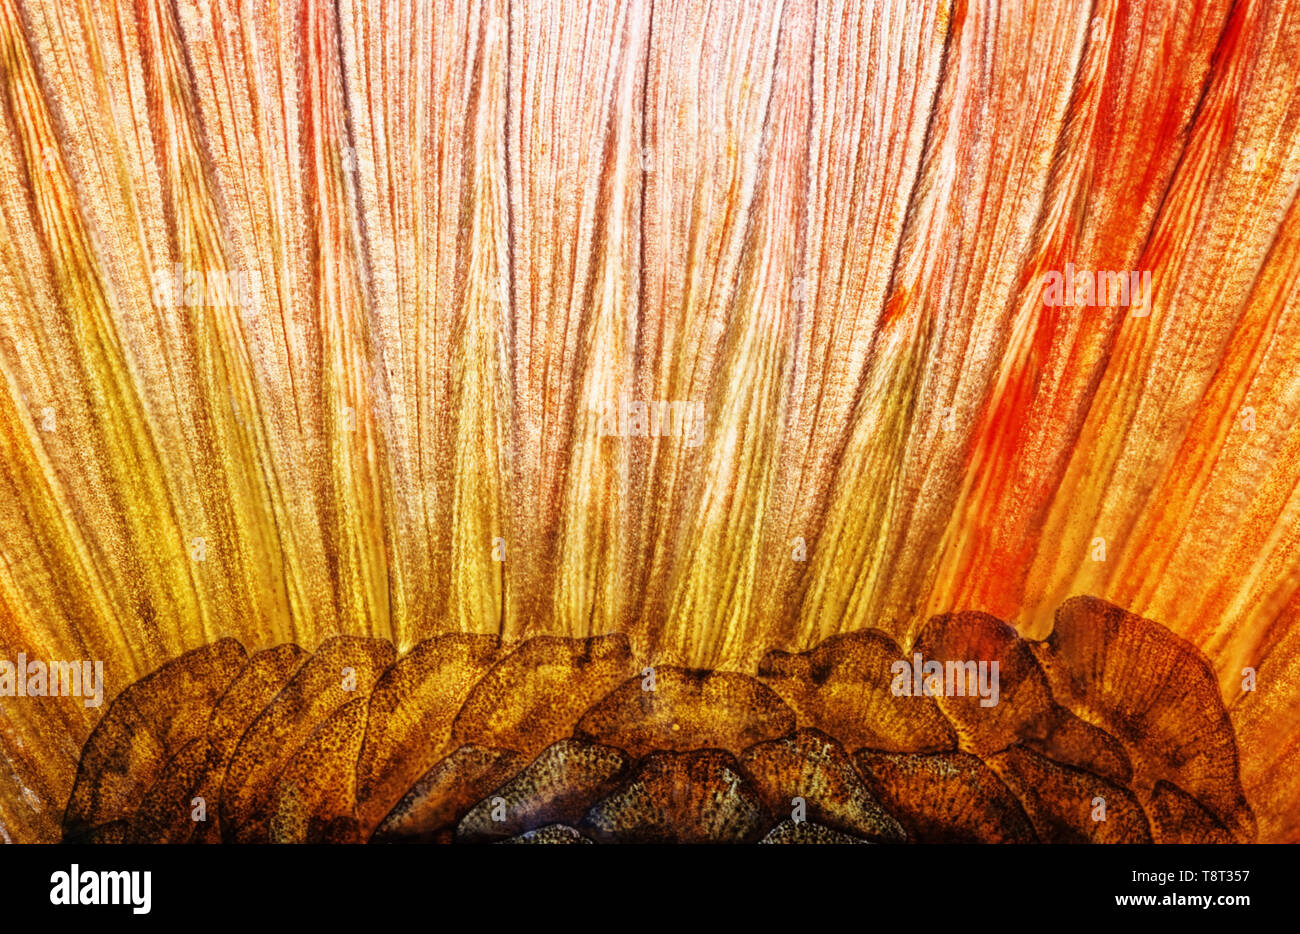 Base della pinna di coda dell'IDE (Leuciscus consumatori di stupefacenti per via parenterale). Immagine appare un po' morbidi a causa del muco epidermica che copre la pelle. Foto Stock